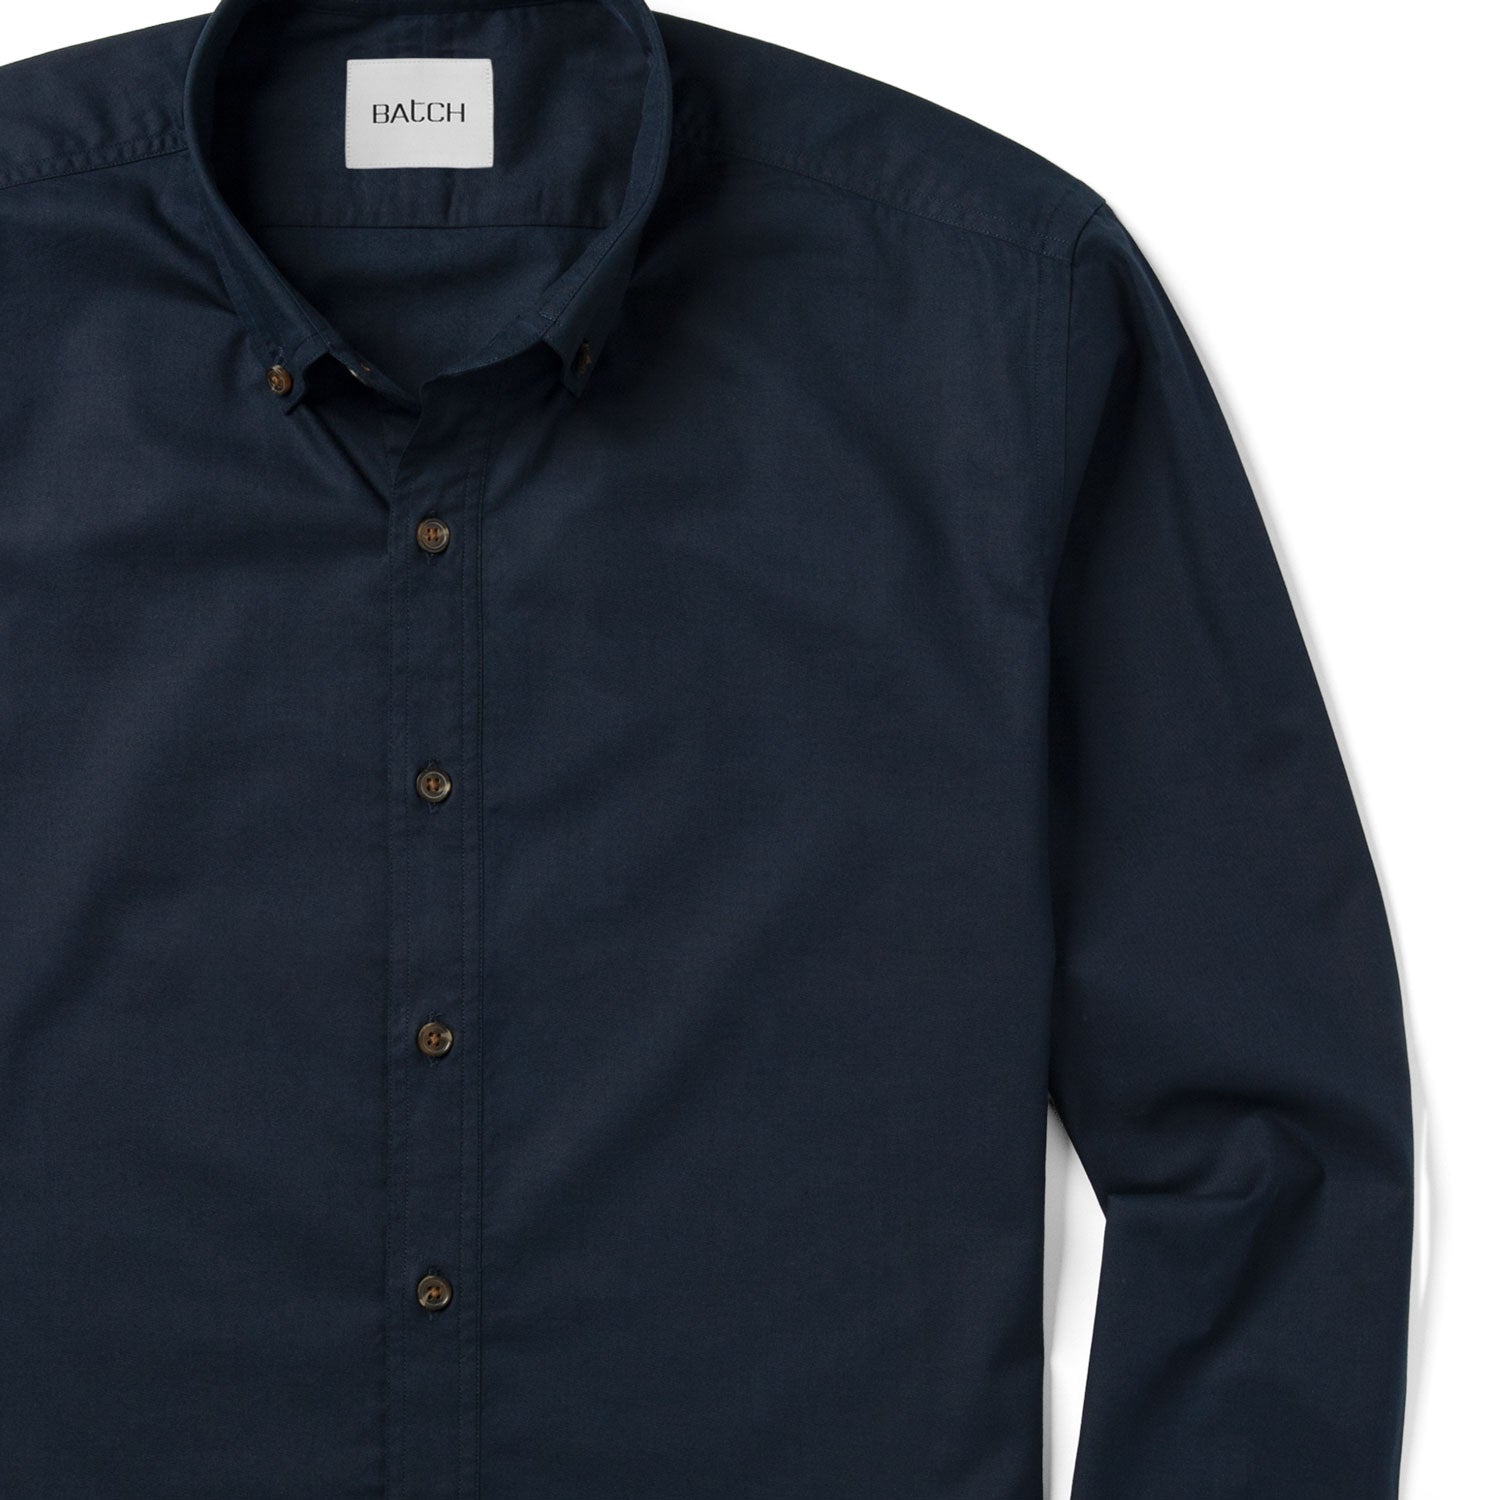 Essential Casual Shirt - Dark Navy Cotton Twill